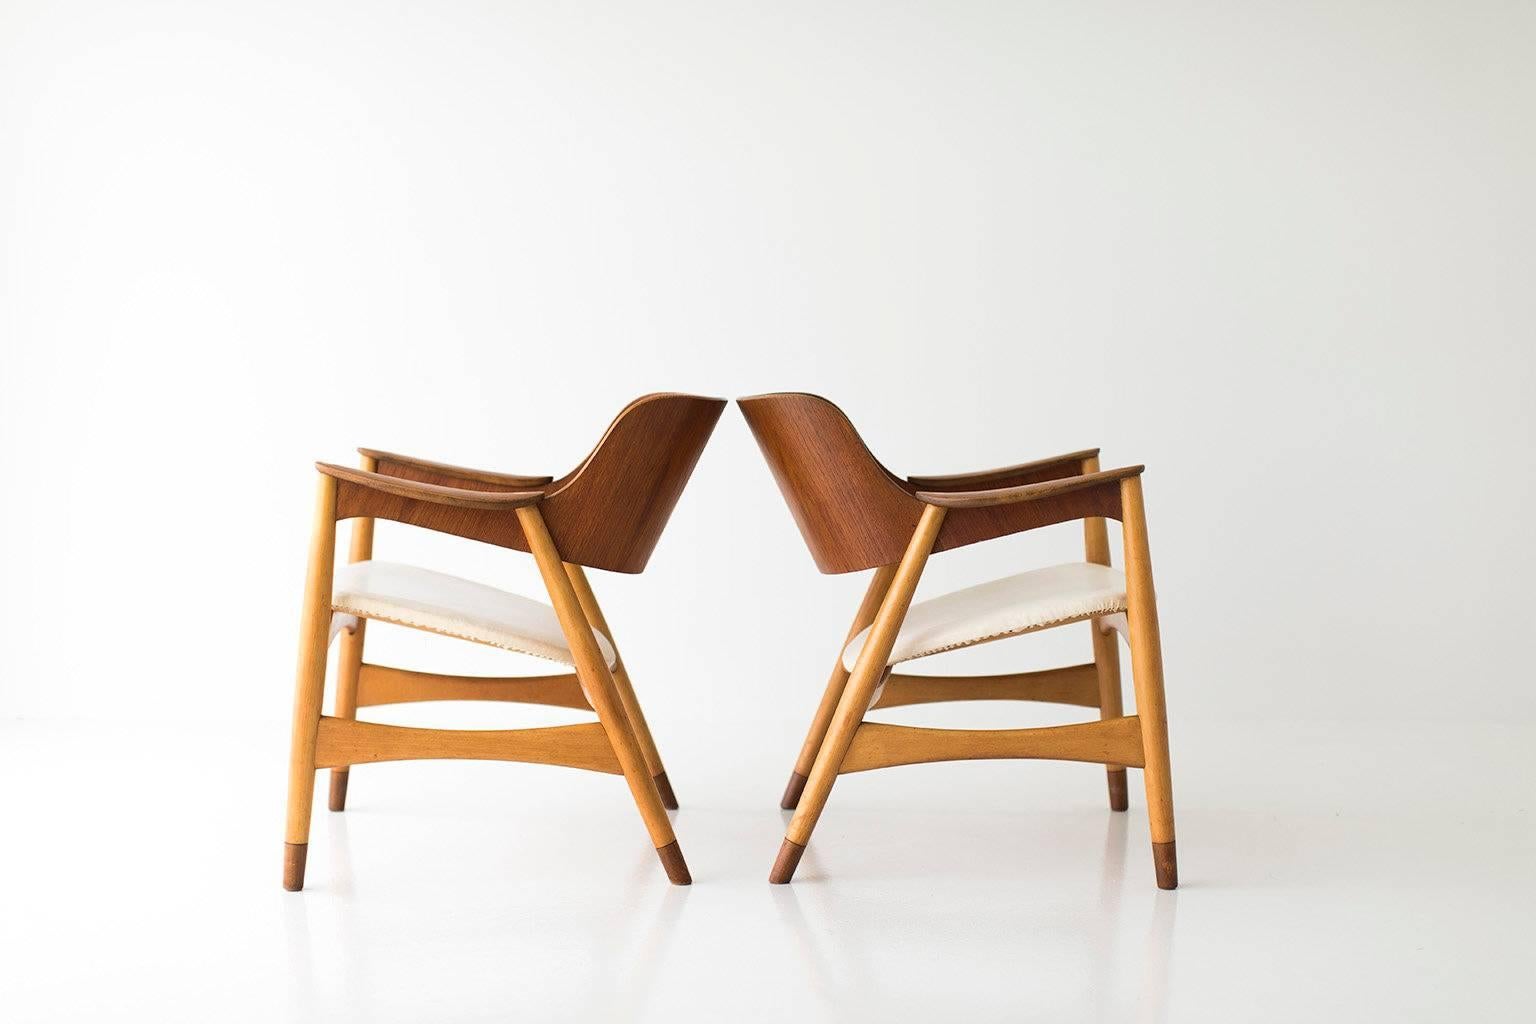 Veneer Jens Hjorth Lounge Chairs for Randers Stolefabrik